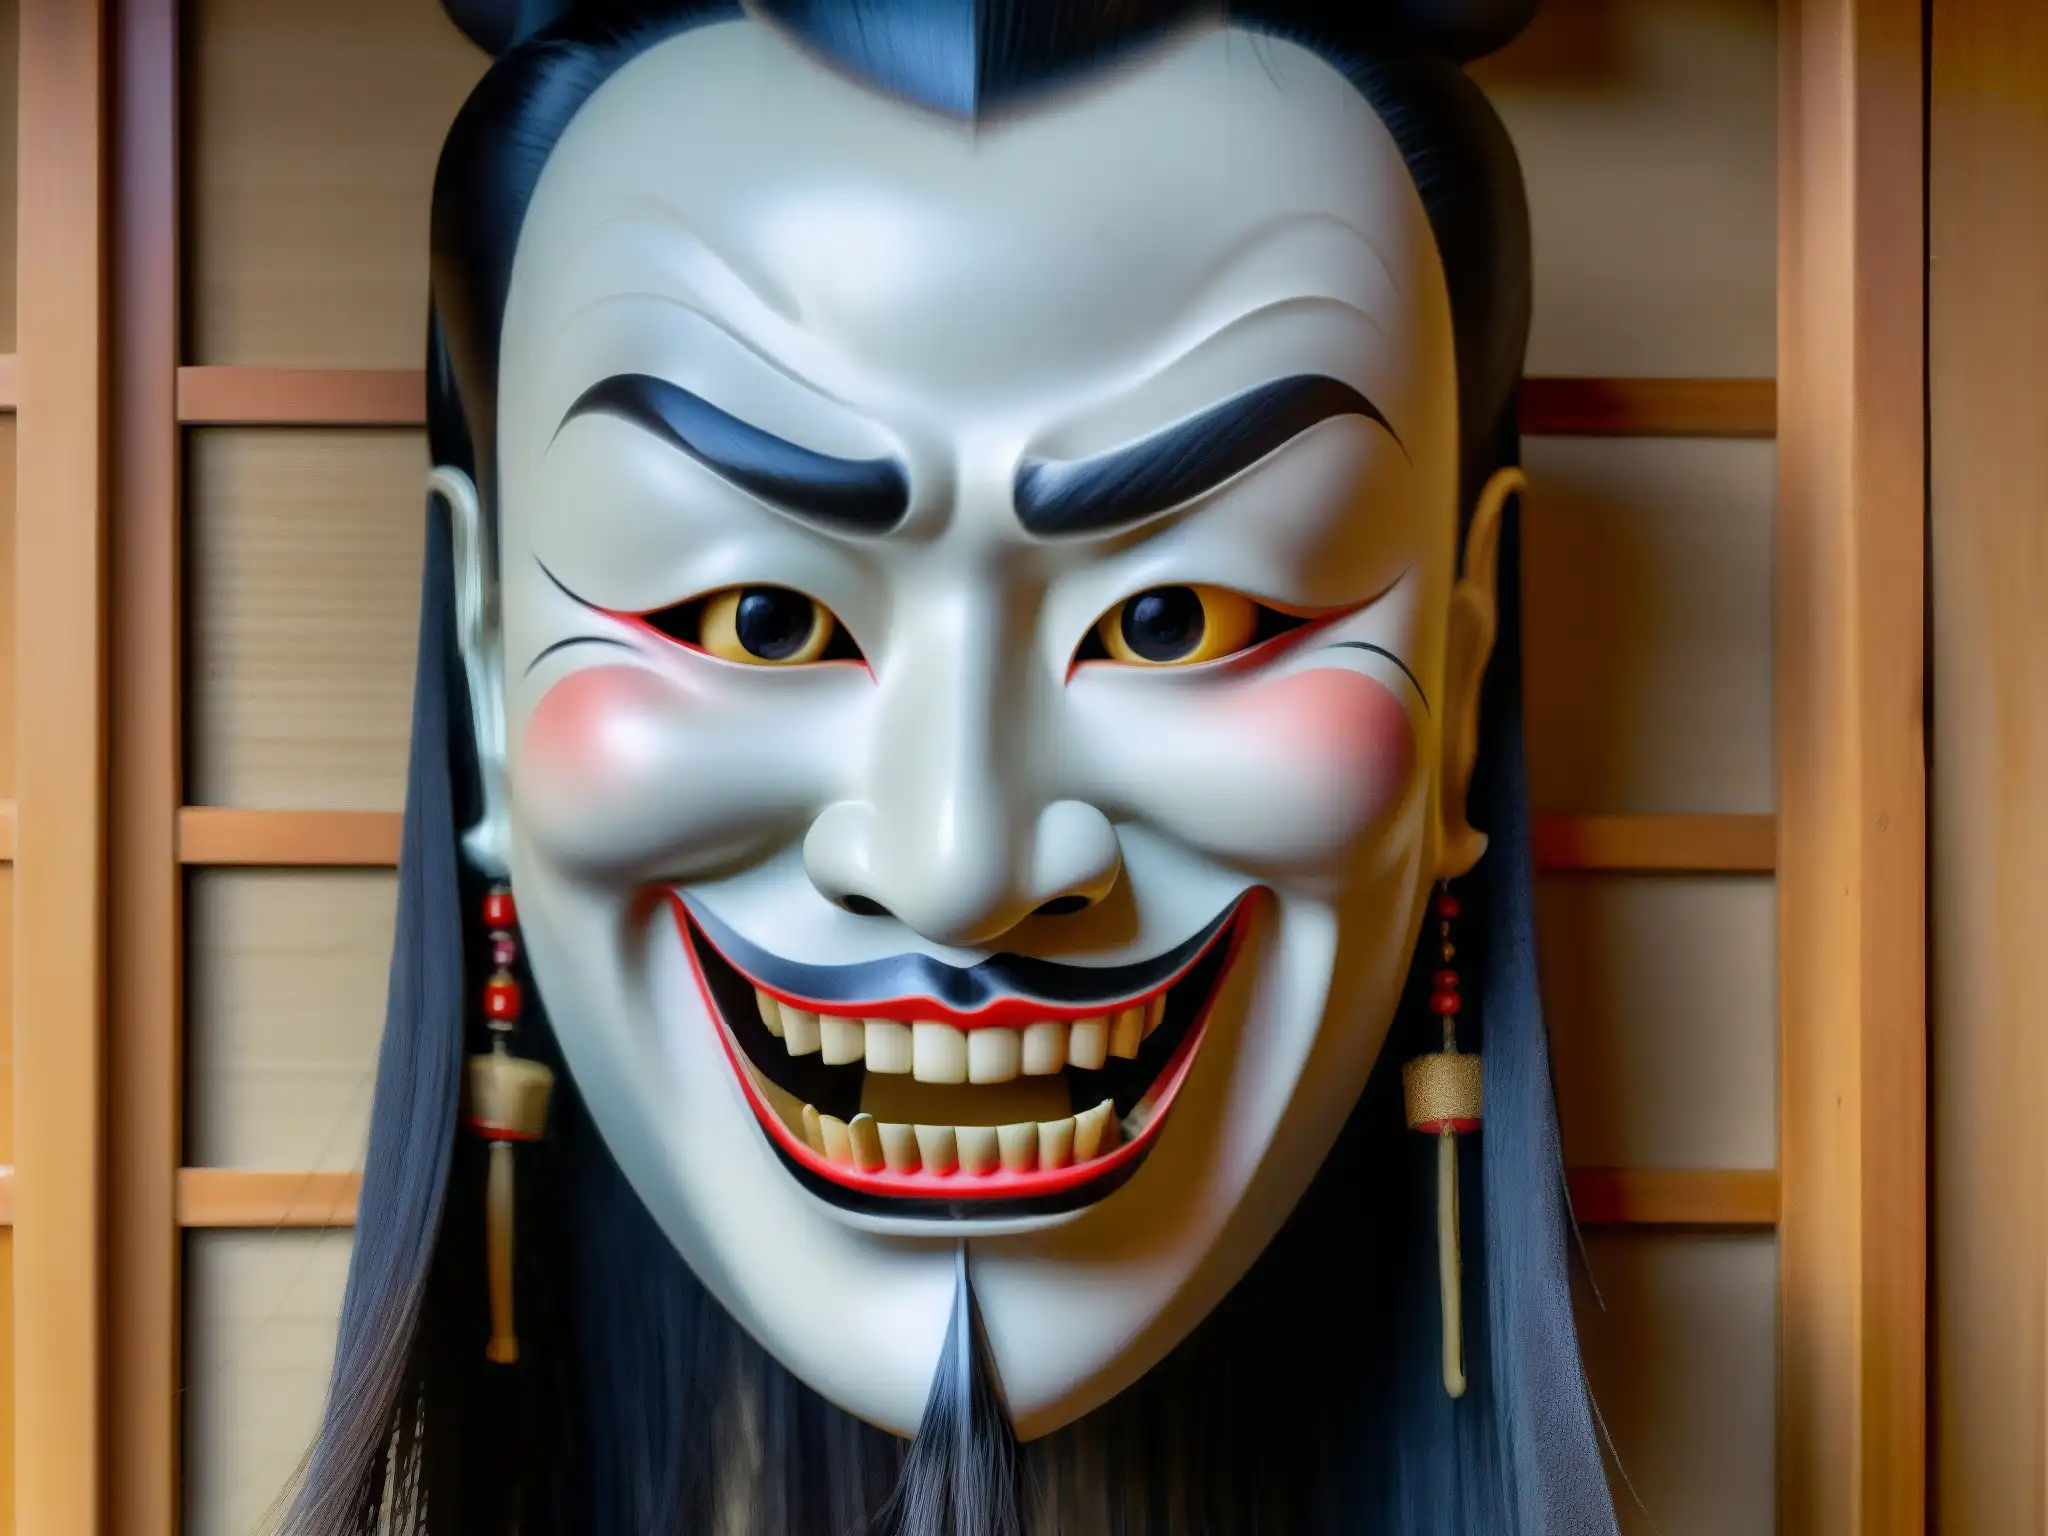 Detallada máscara japonesa Noh de Kuchisakeonna en alta resolución, capturando la esencia inquietante de la leyenda urbana